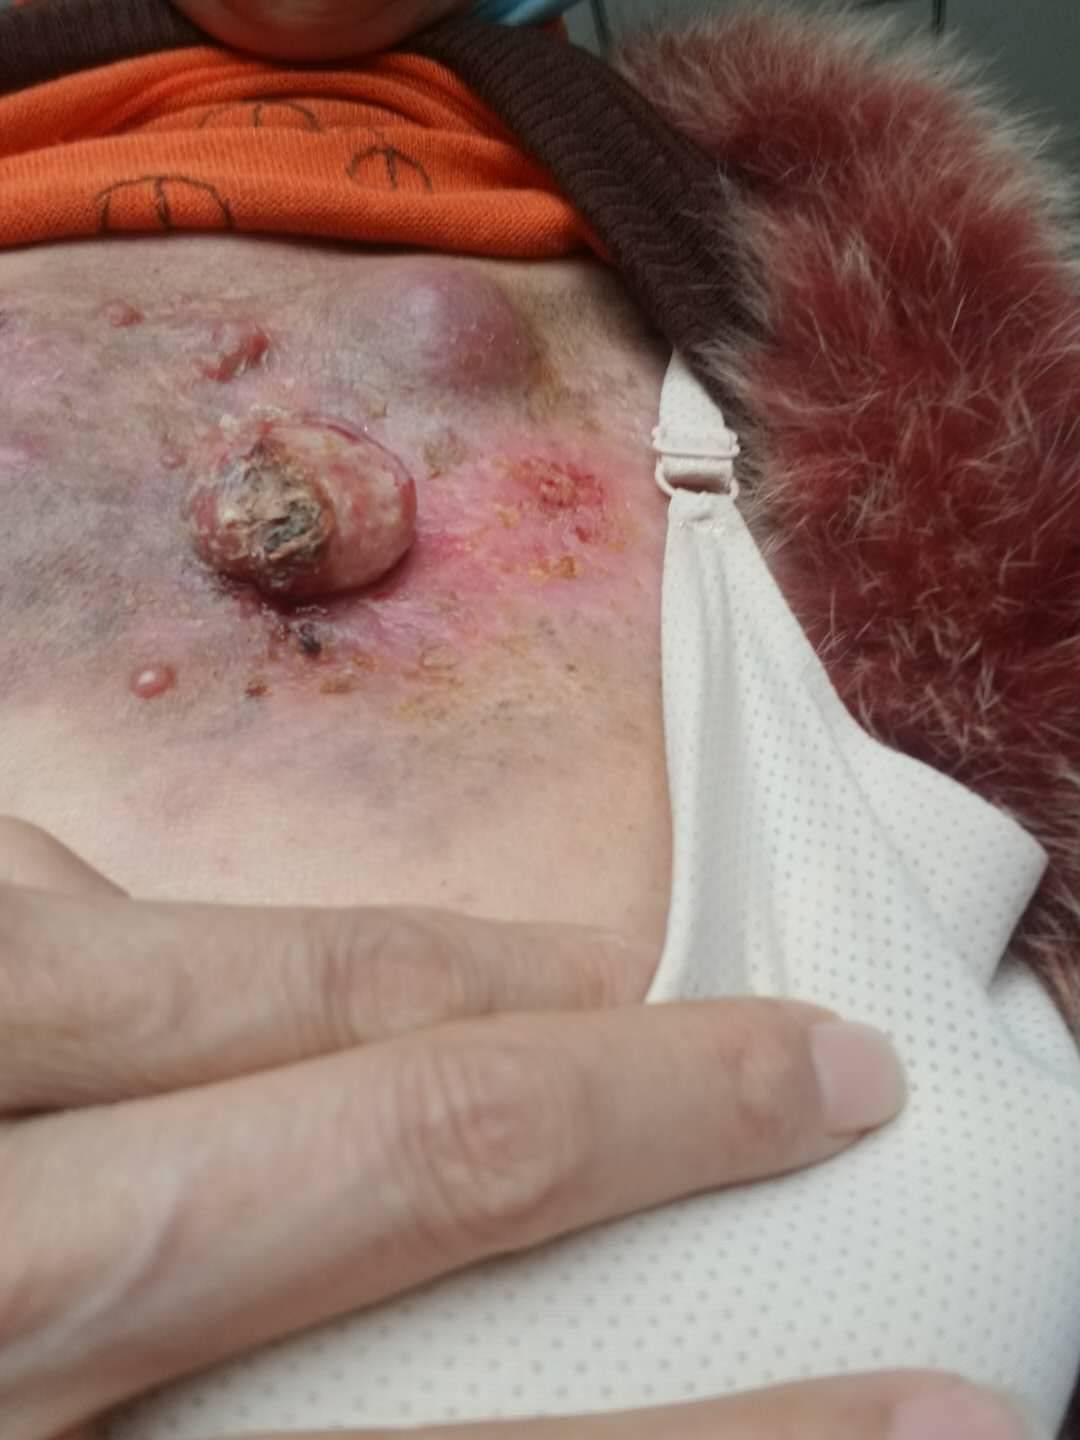 发炎性乳腺癌初期图片图片